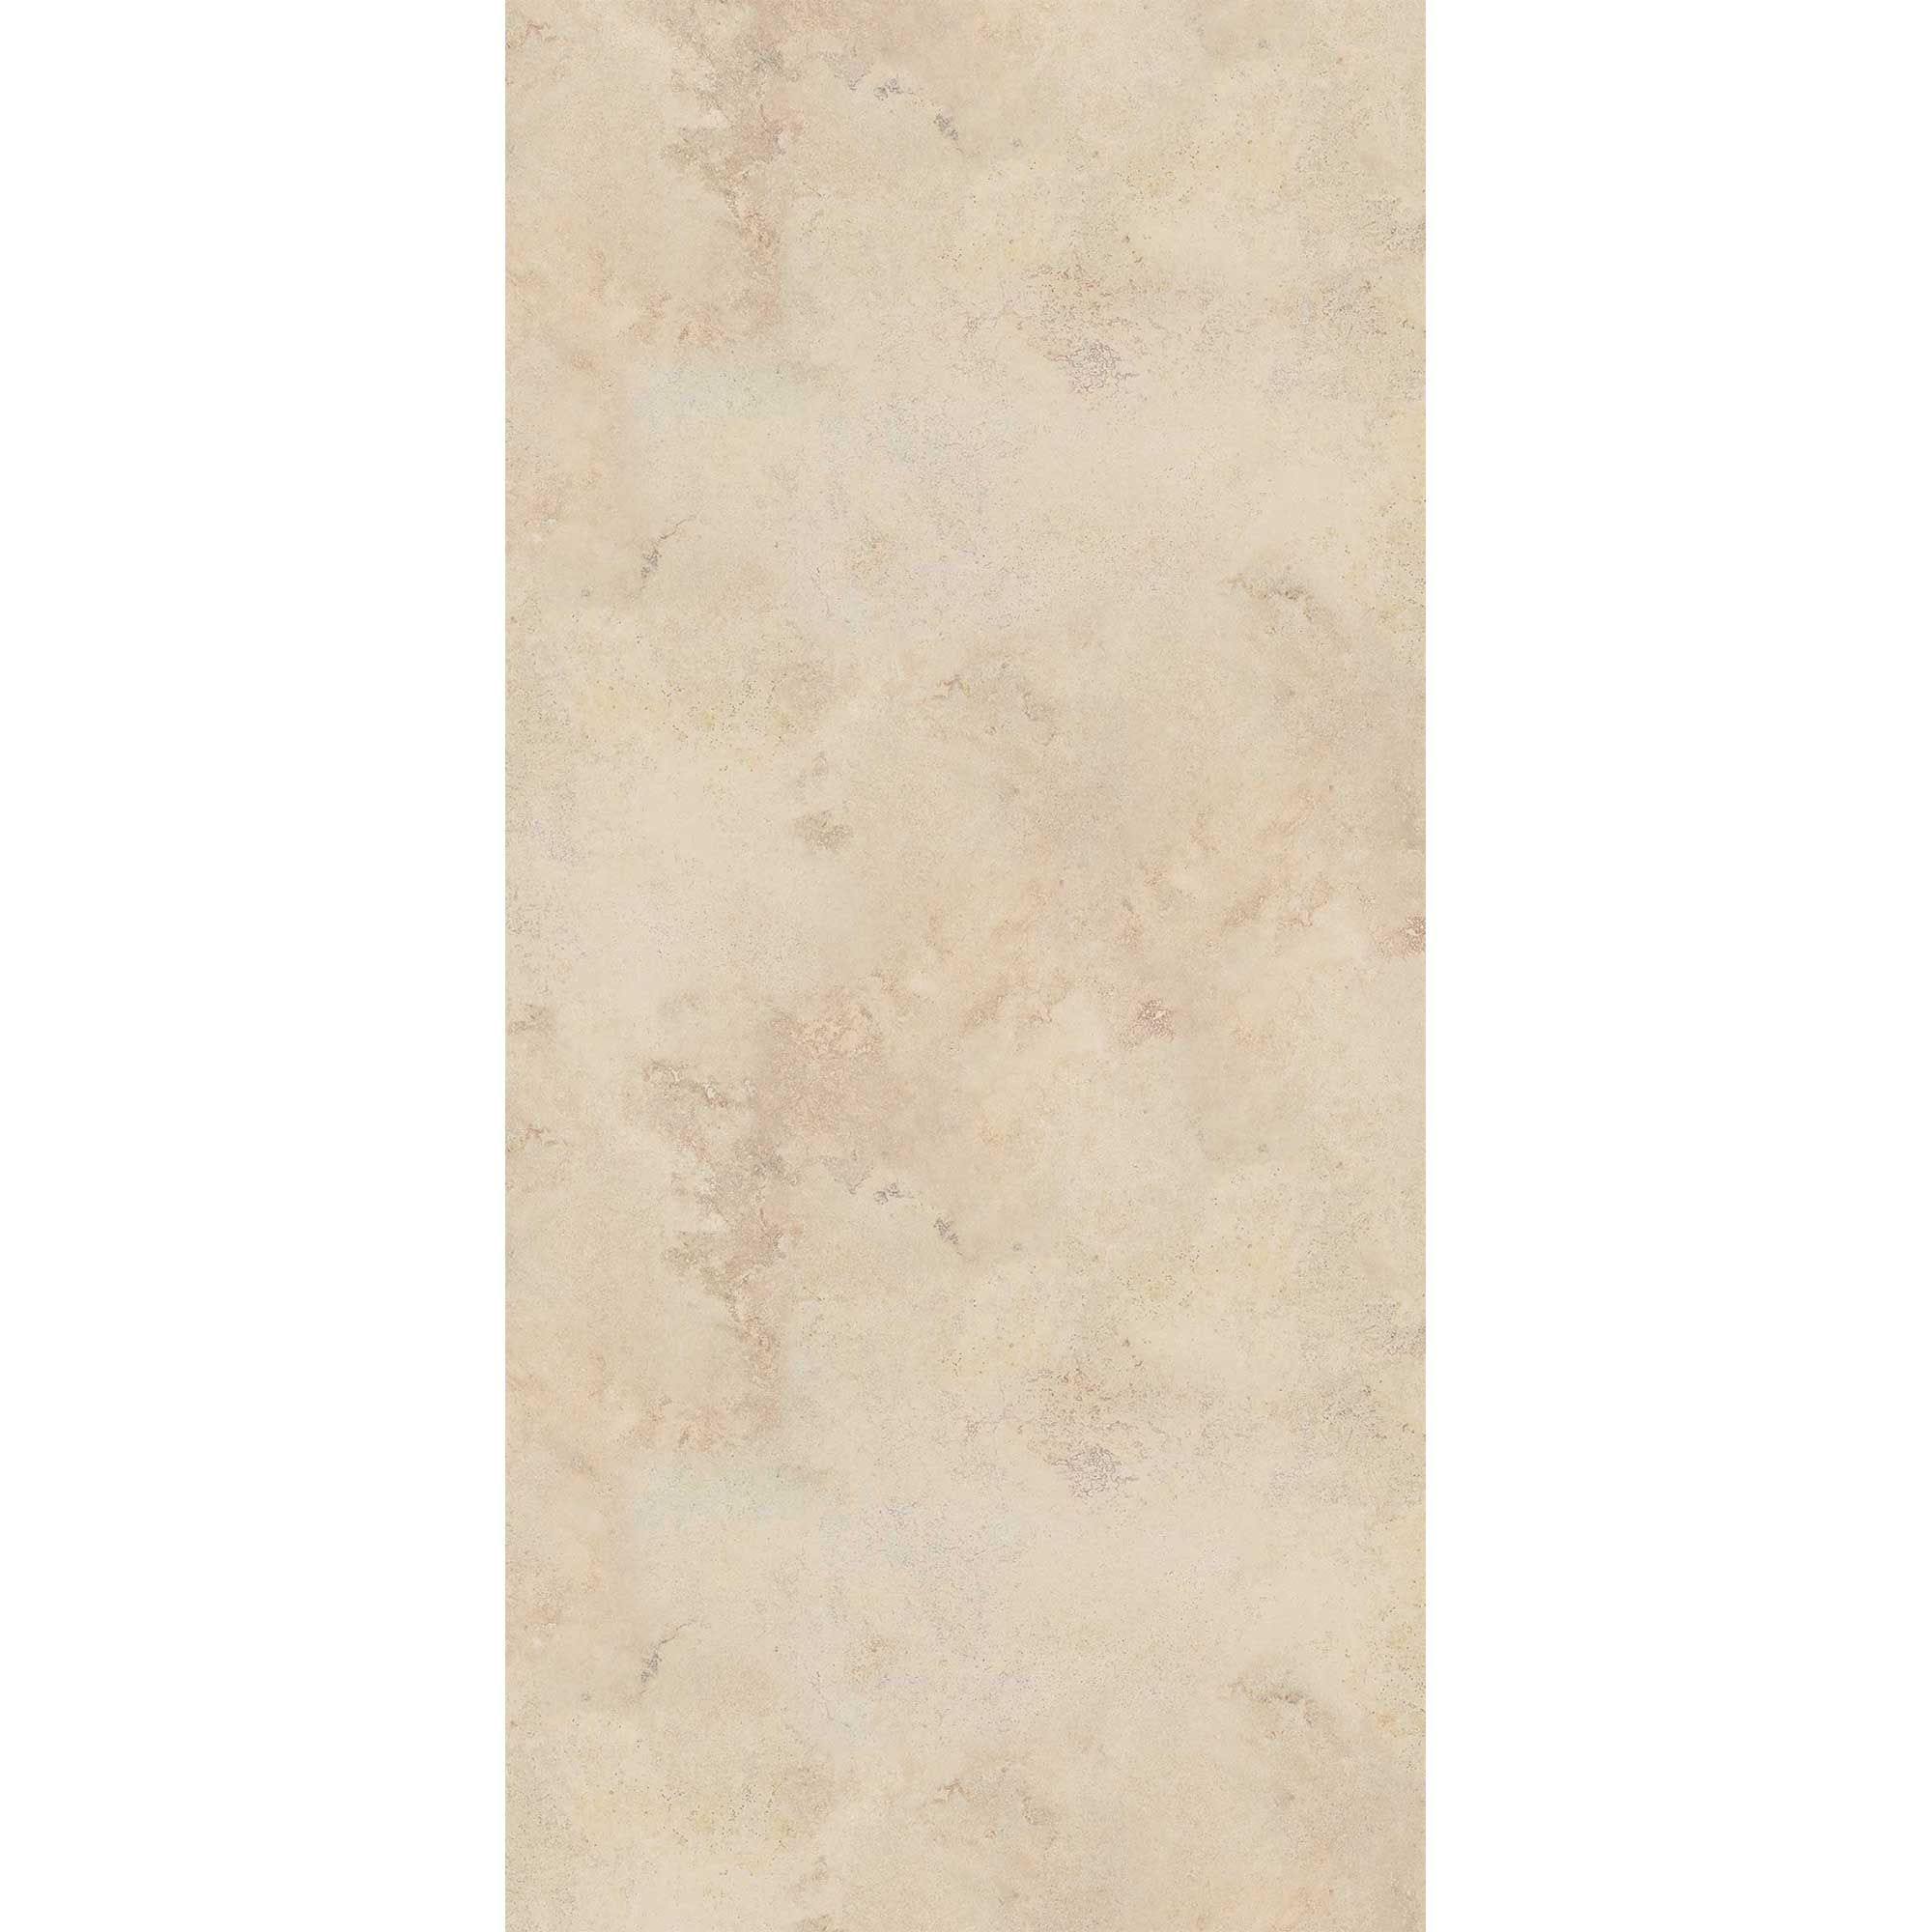 Duschrückwand 'Quick72' hochglanz Sandsteinfarben beige 100 x 255 cm + product picture